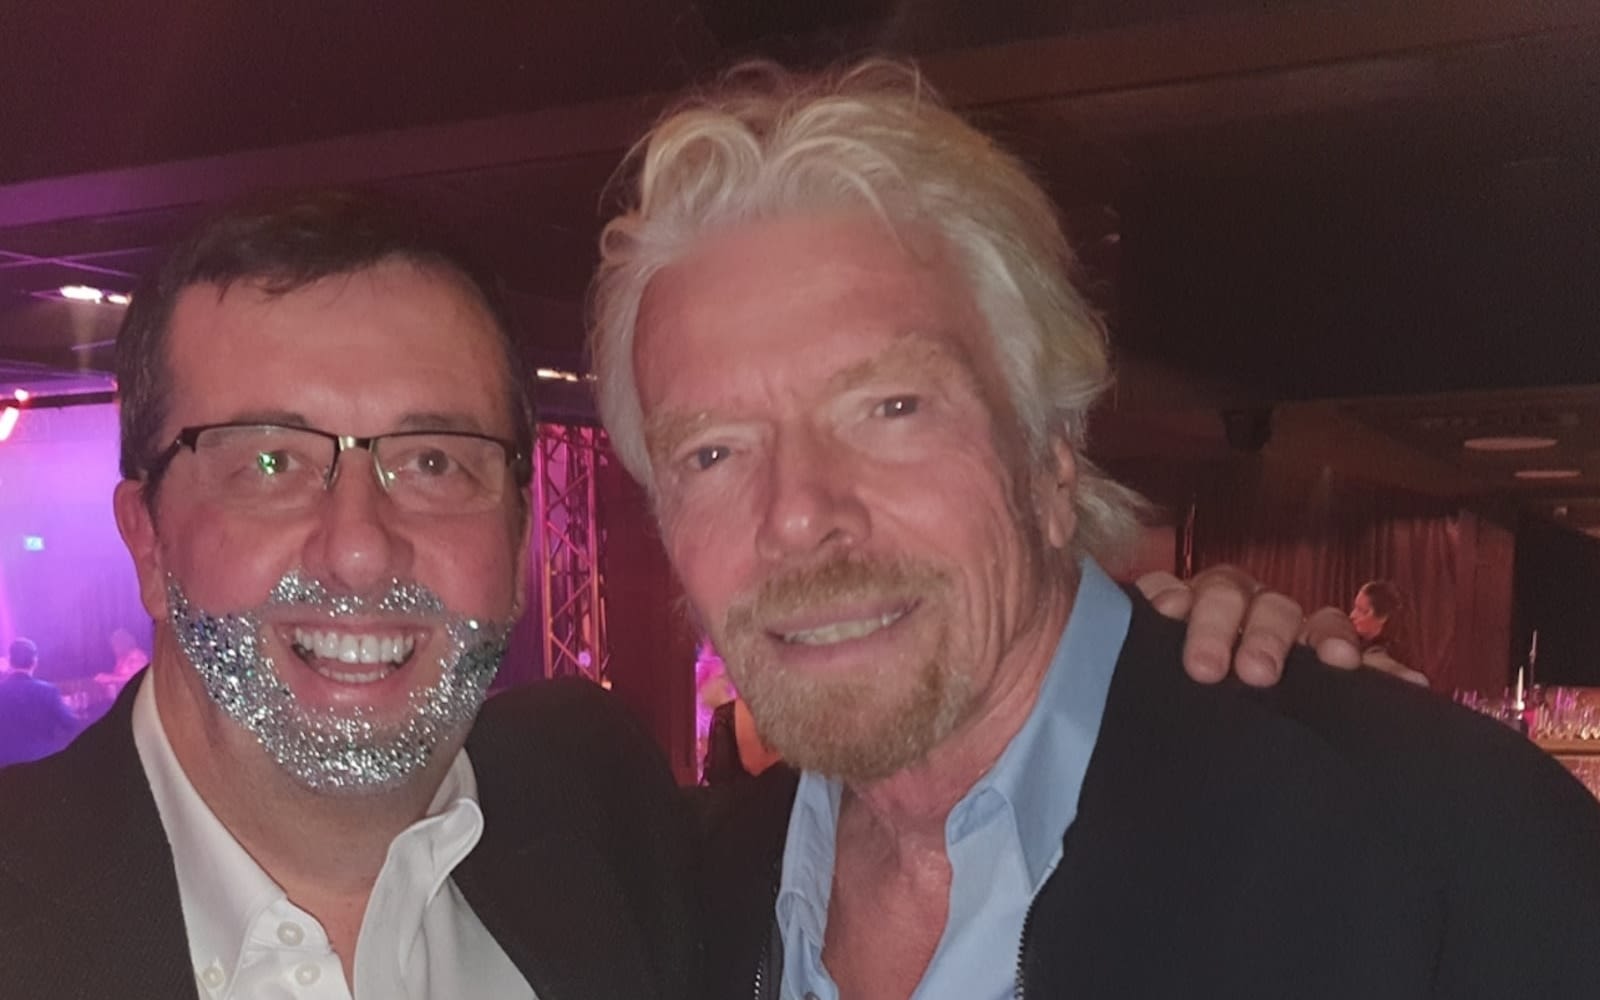 Richard Branson and Darren Jones wearing a glitter beard at Virgin Stars event 